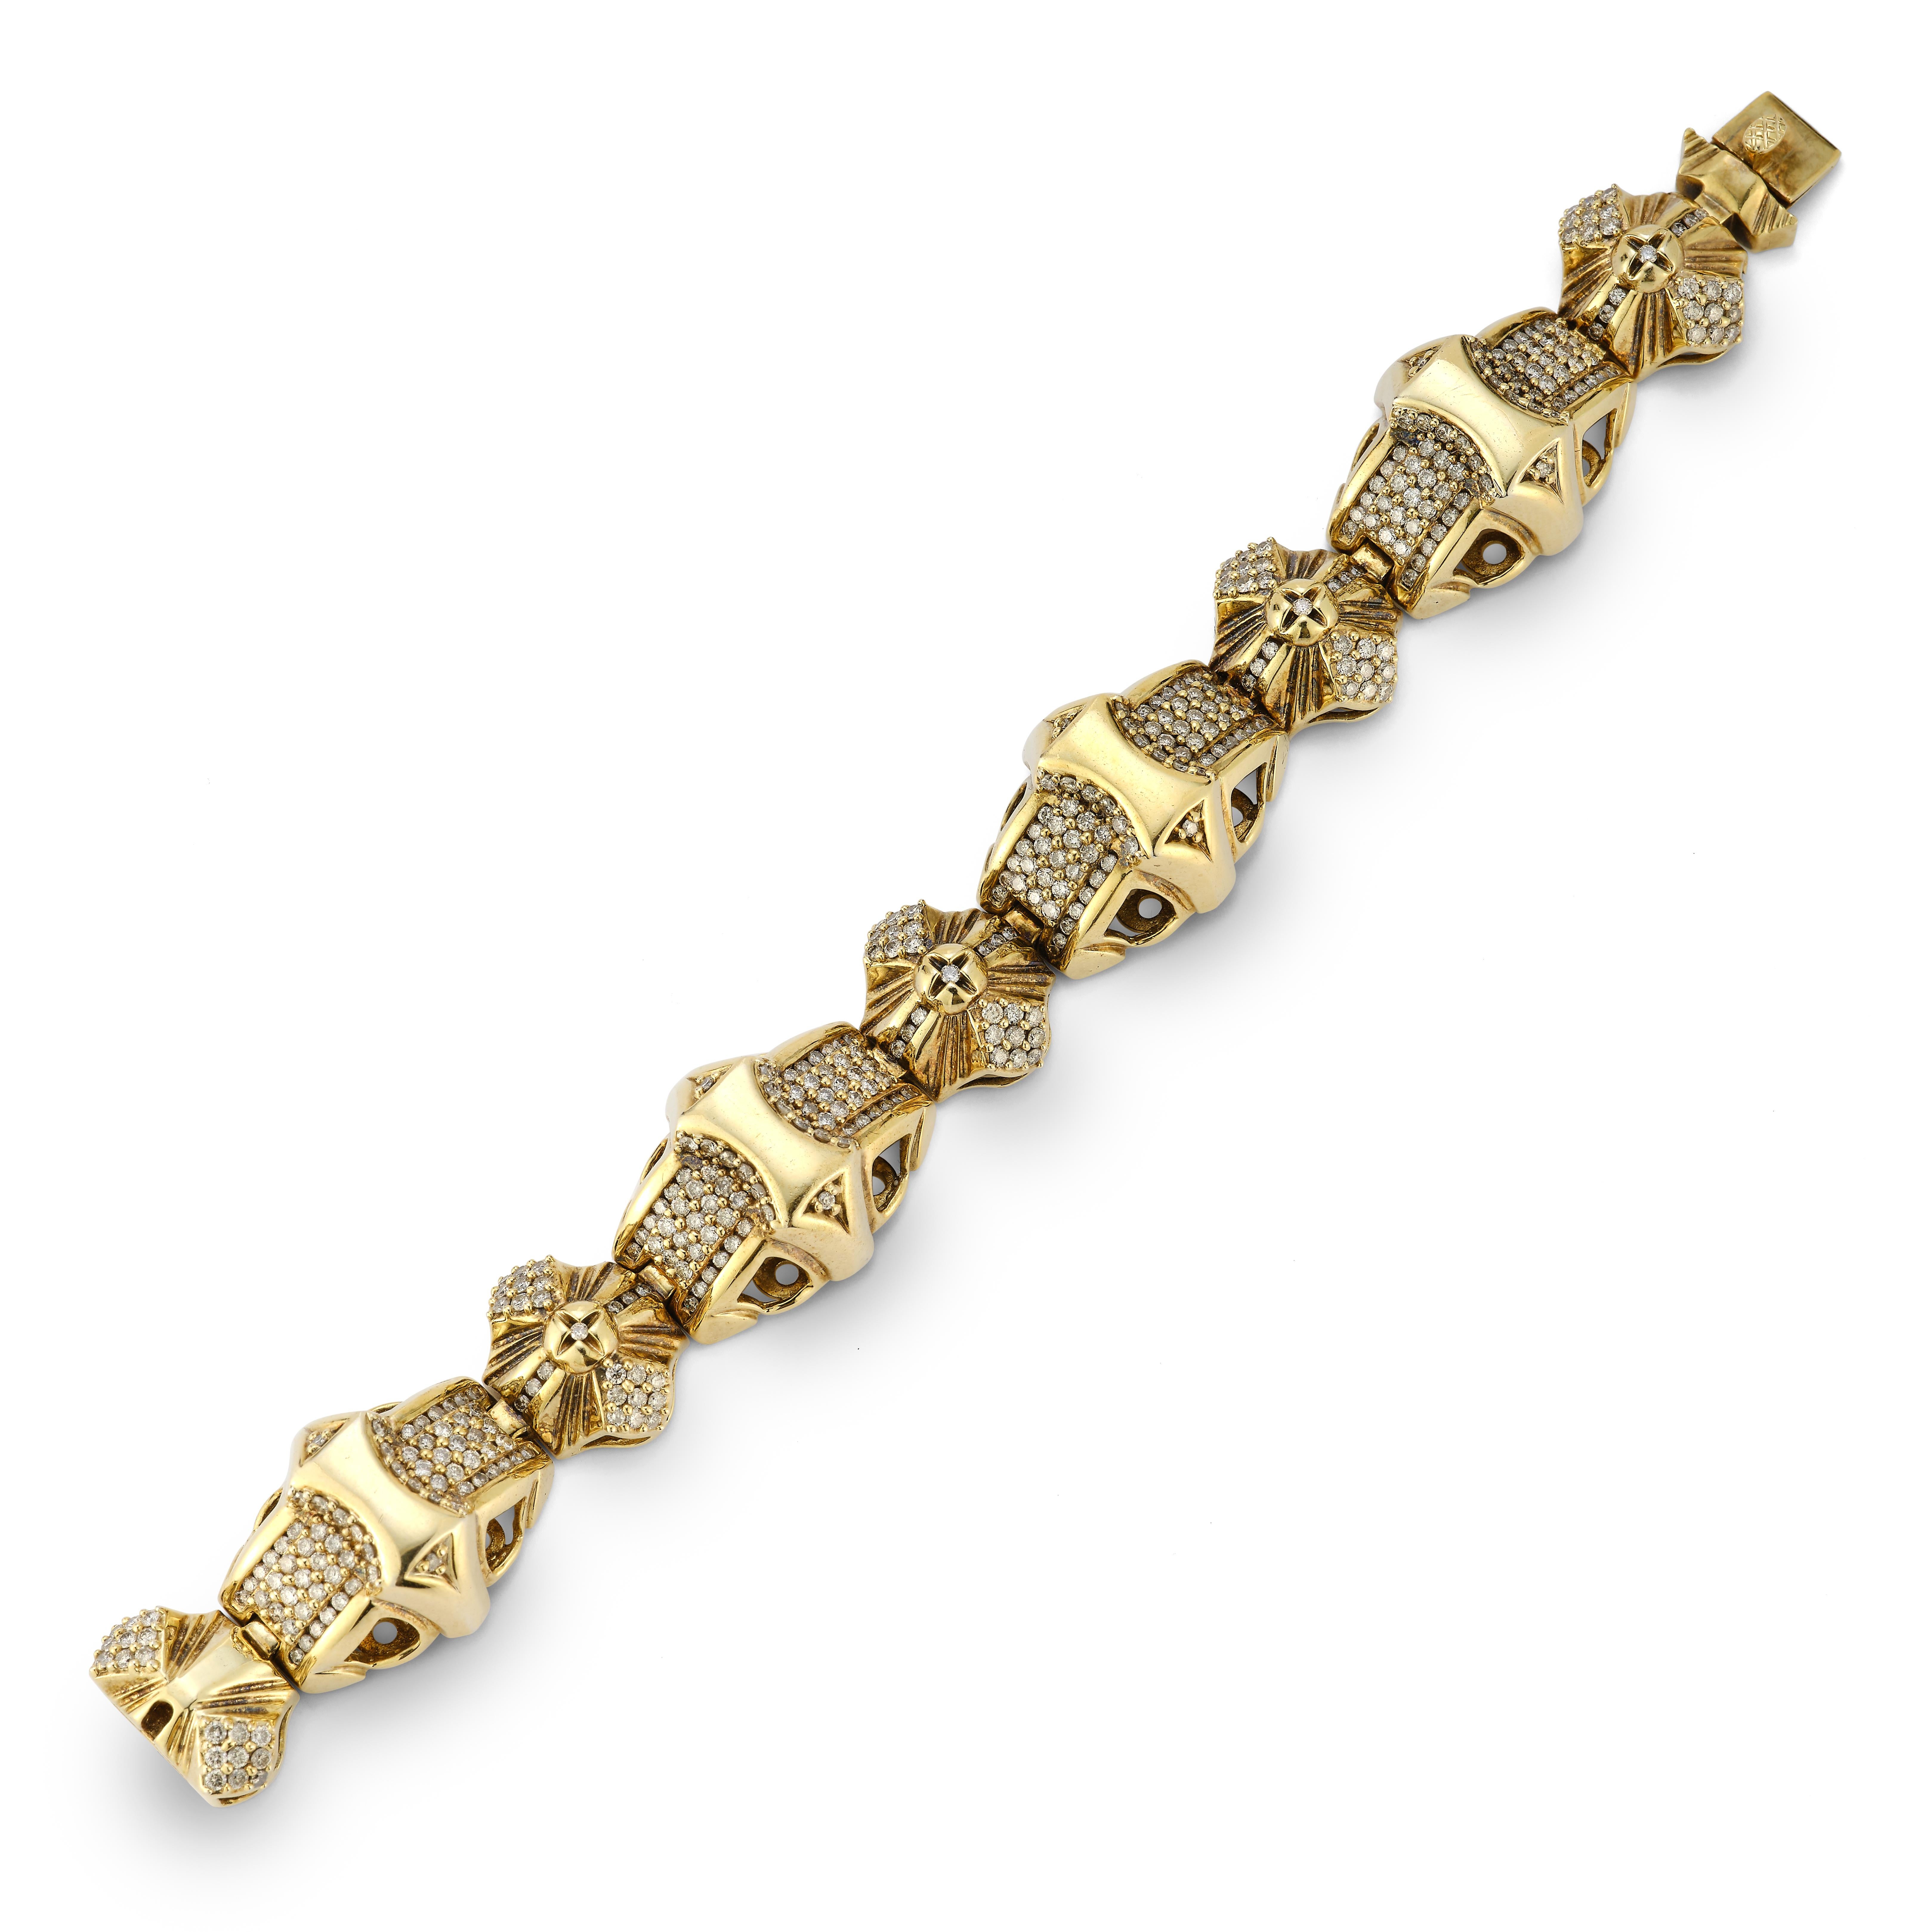 Herrenarmband Pave Diamant & Gold 

Geometrische Goldglieder mit 390 eingefassten Diamanten in 14 Karat Gelbgold.

Ungefähres Gesamtgewicht der Diamanten: 11,7ct

Abmessungen: 7